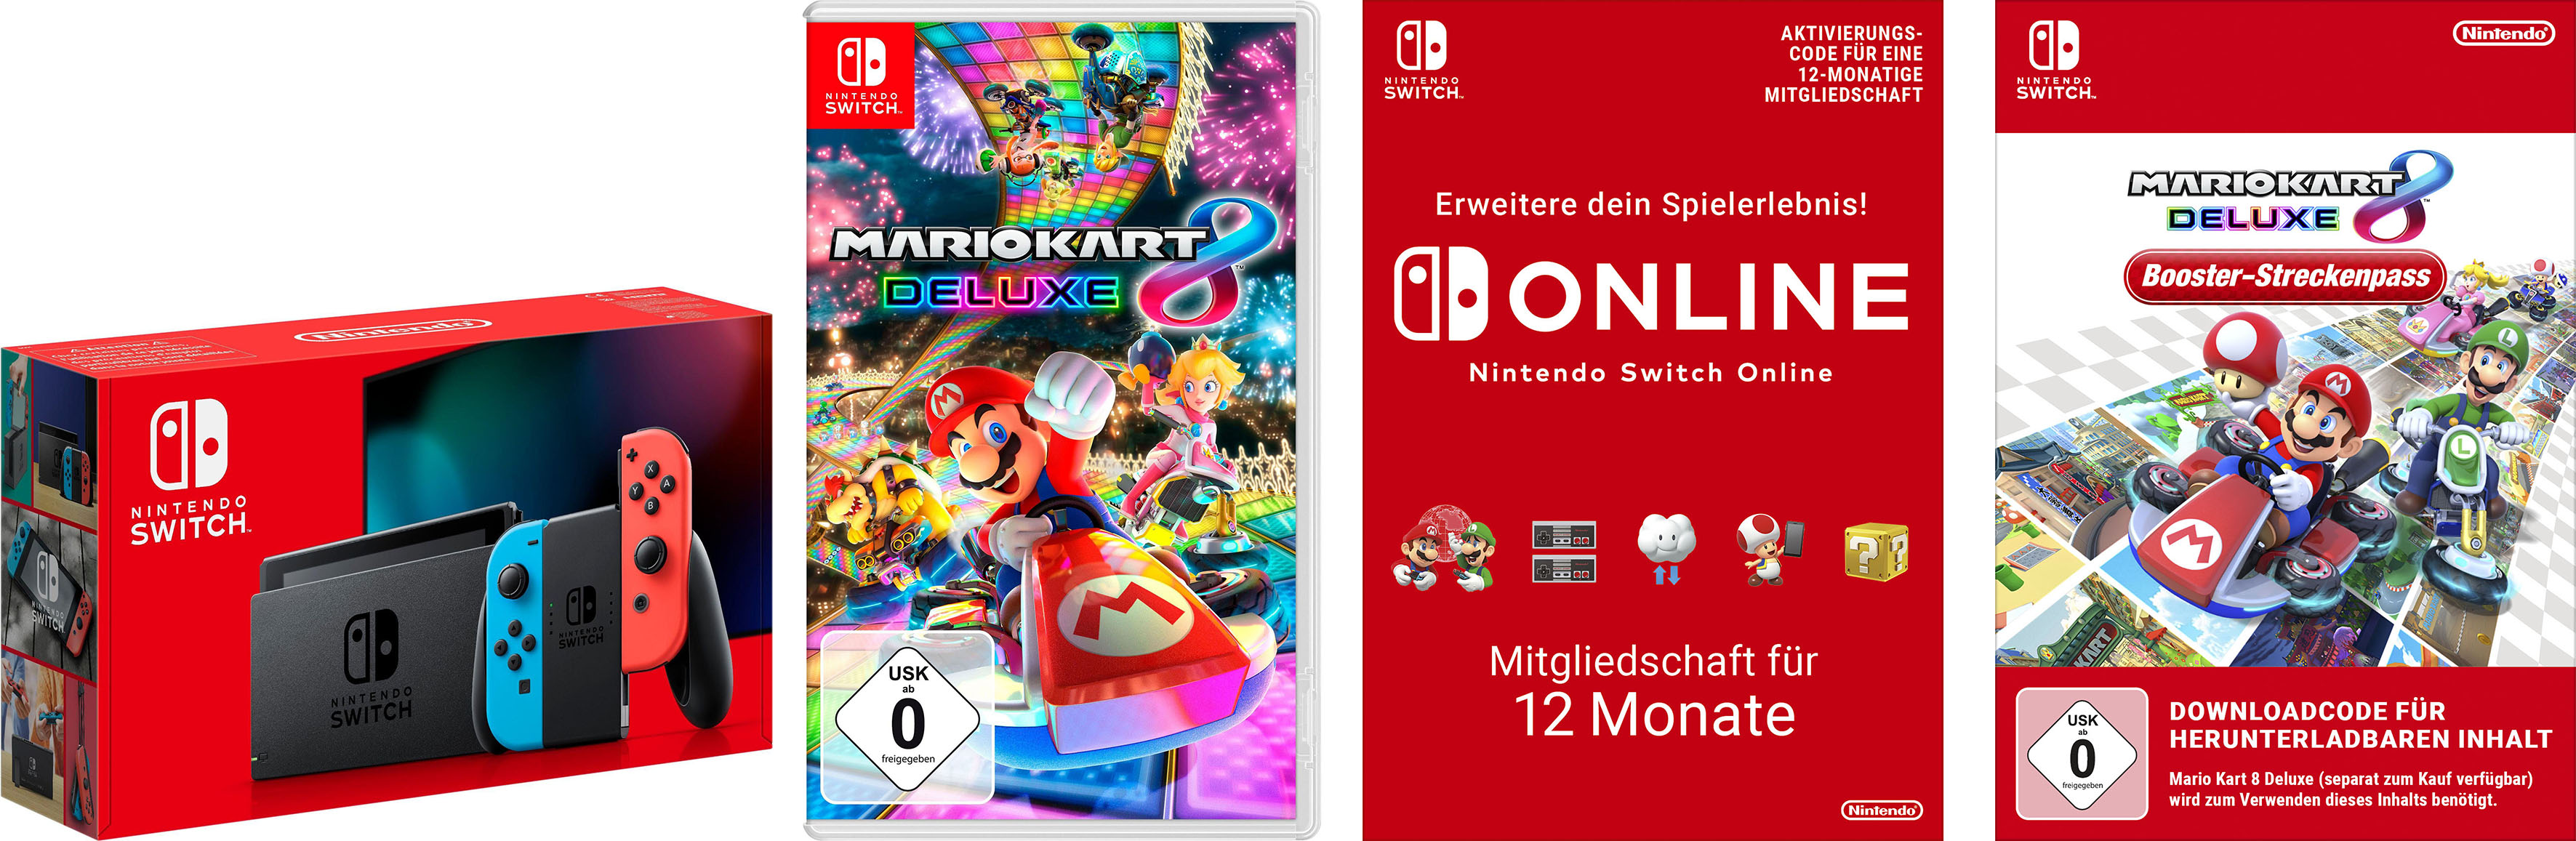 Image of Nintendo Switch Konsolen-Set, inkl. Mario Kart 8 + Booster-Streckenpass + Mitgliedschaft Nintendo Switch Online bei Ackermann Versand Schweiz